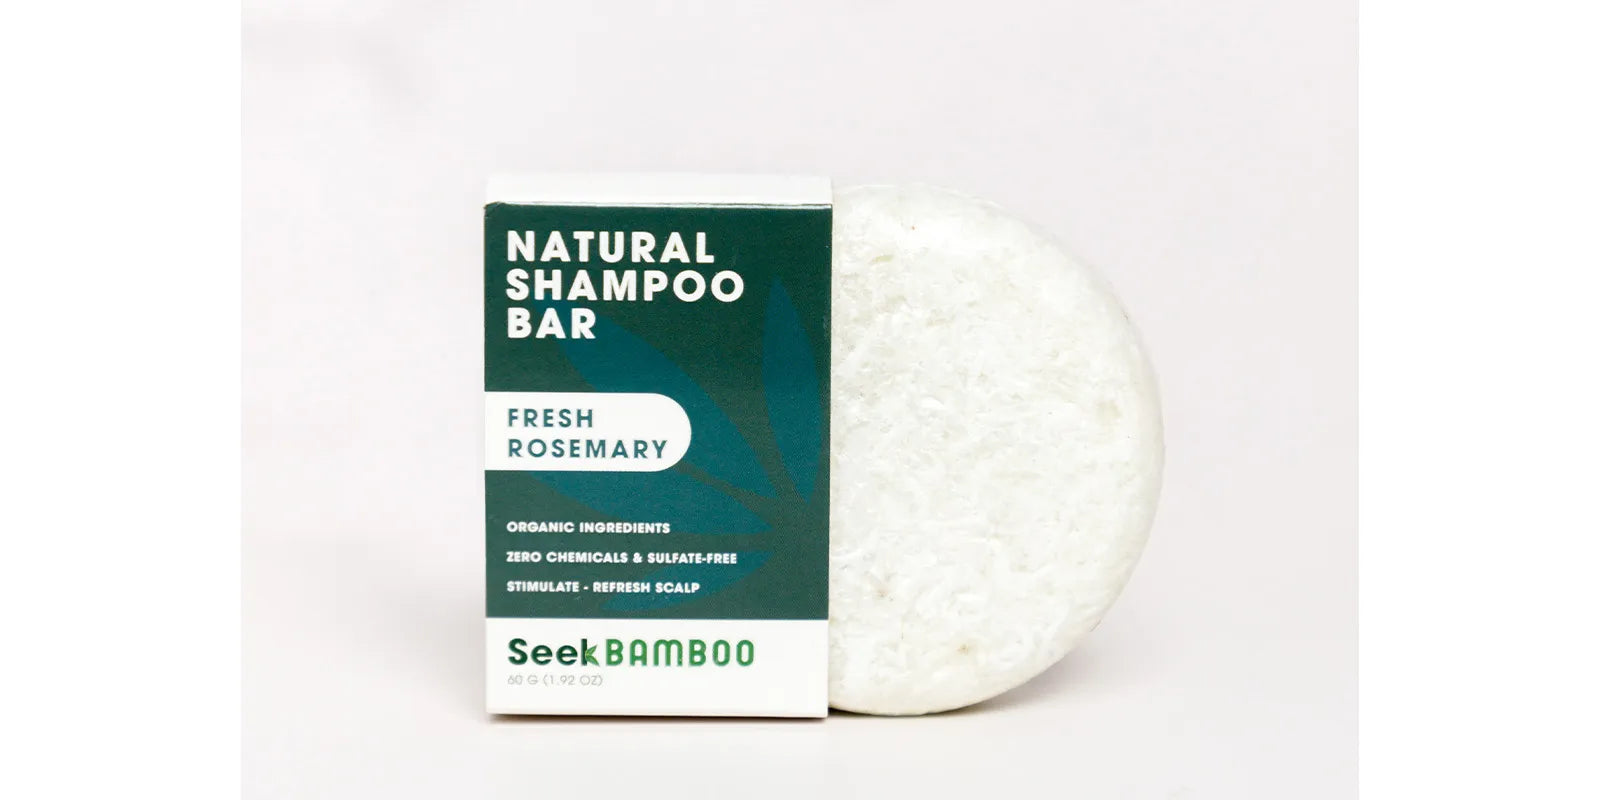 zero waste shampoo rosemary